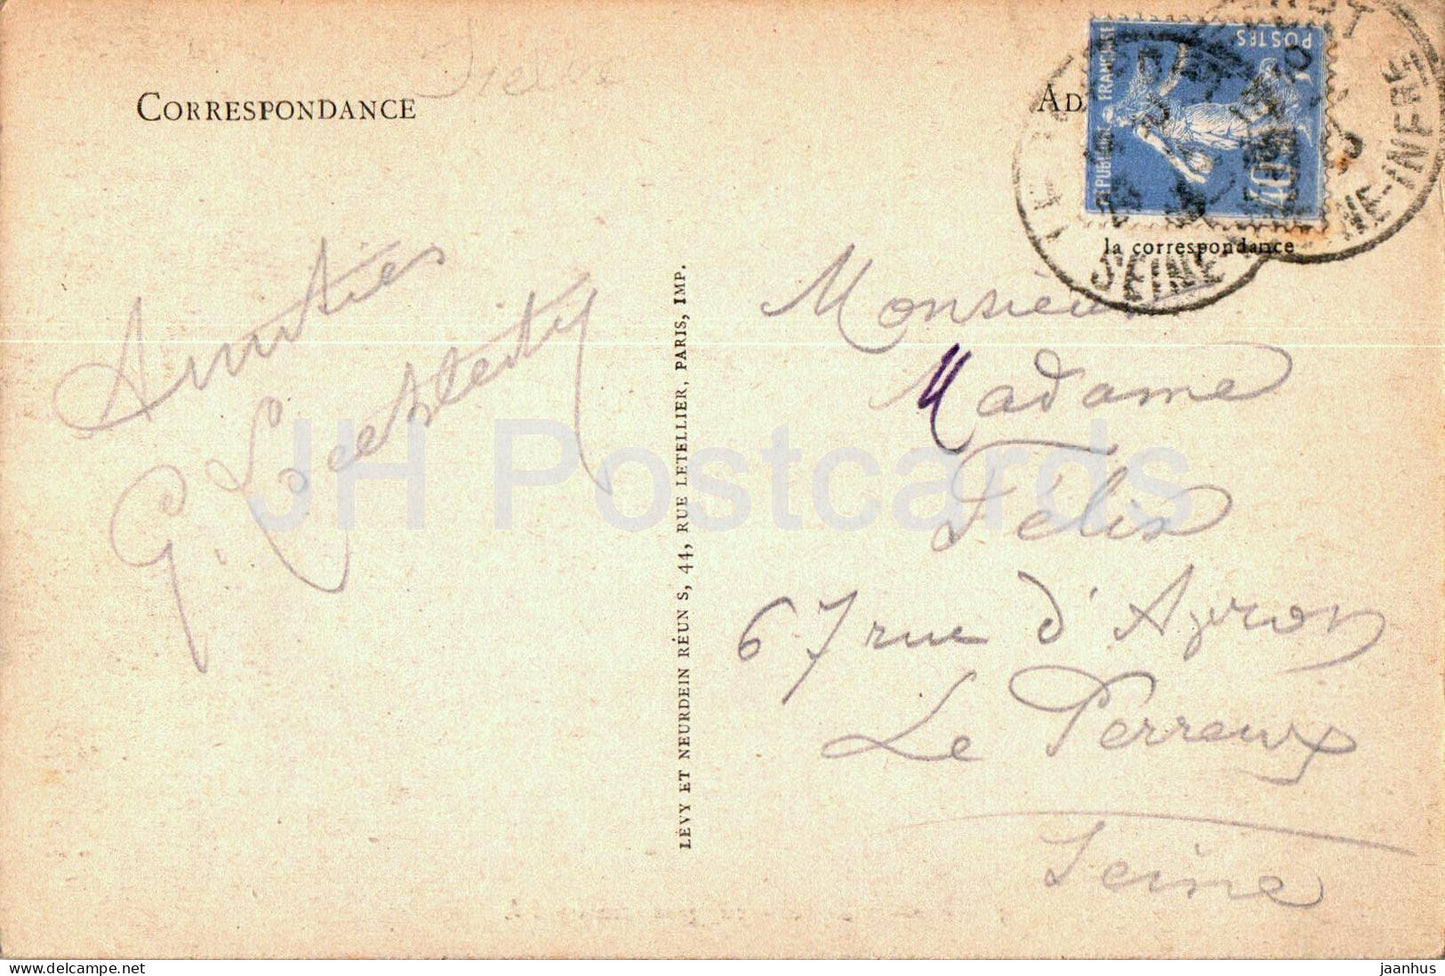 Barques de Peche par gros temps - Fischerboot - Schiff - 5 - alte Postkarte - 1933 - Frankreich - gebraucht 